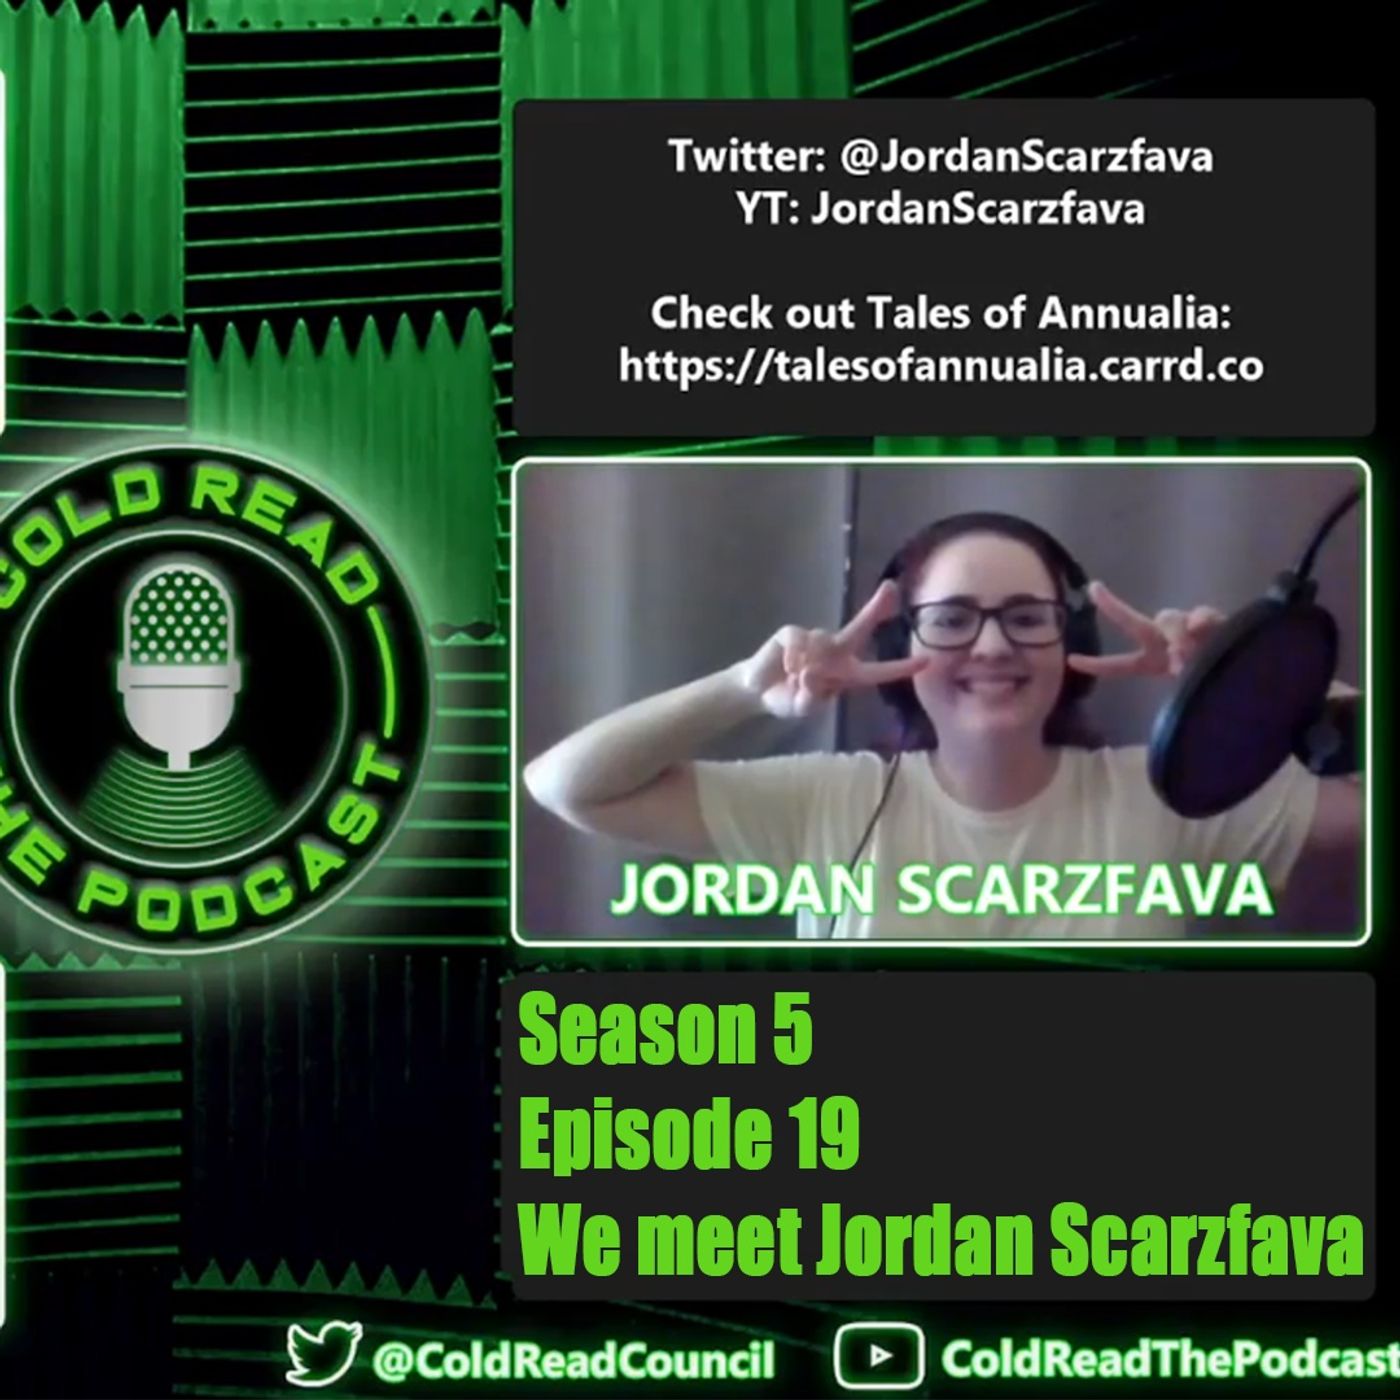 We Meet Jordan Scarzfava